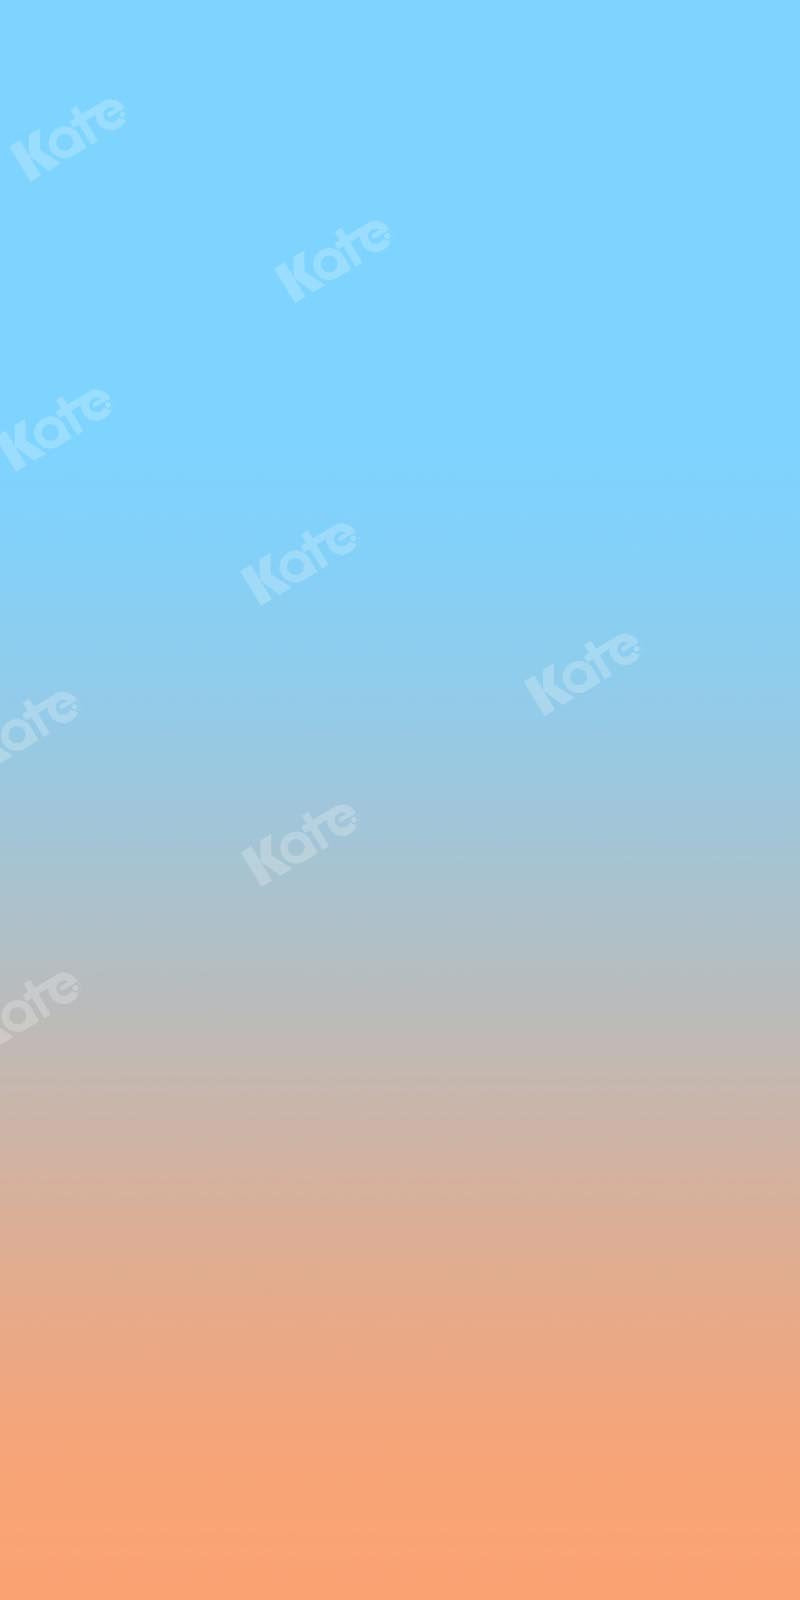 Kate Abstrakter babyblauer Farbverlauf-orange Hintergrund Ombre